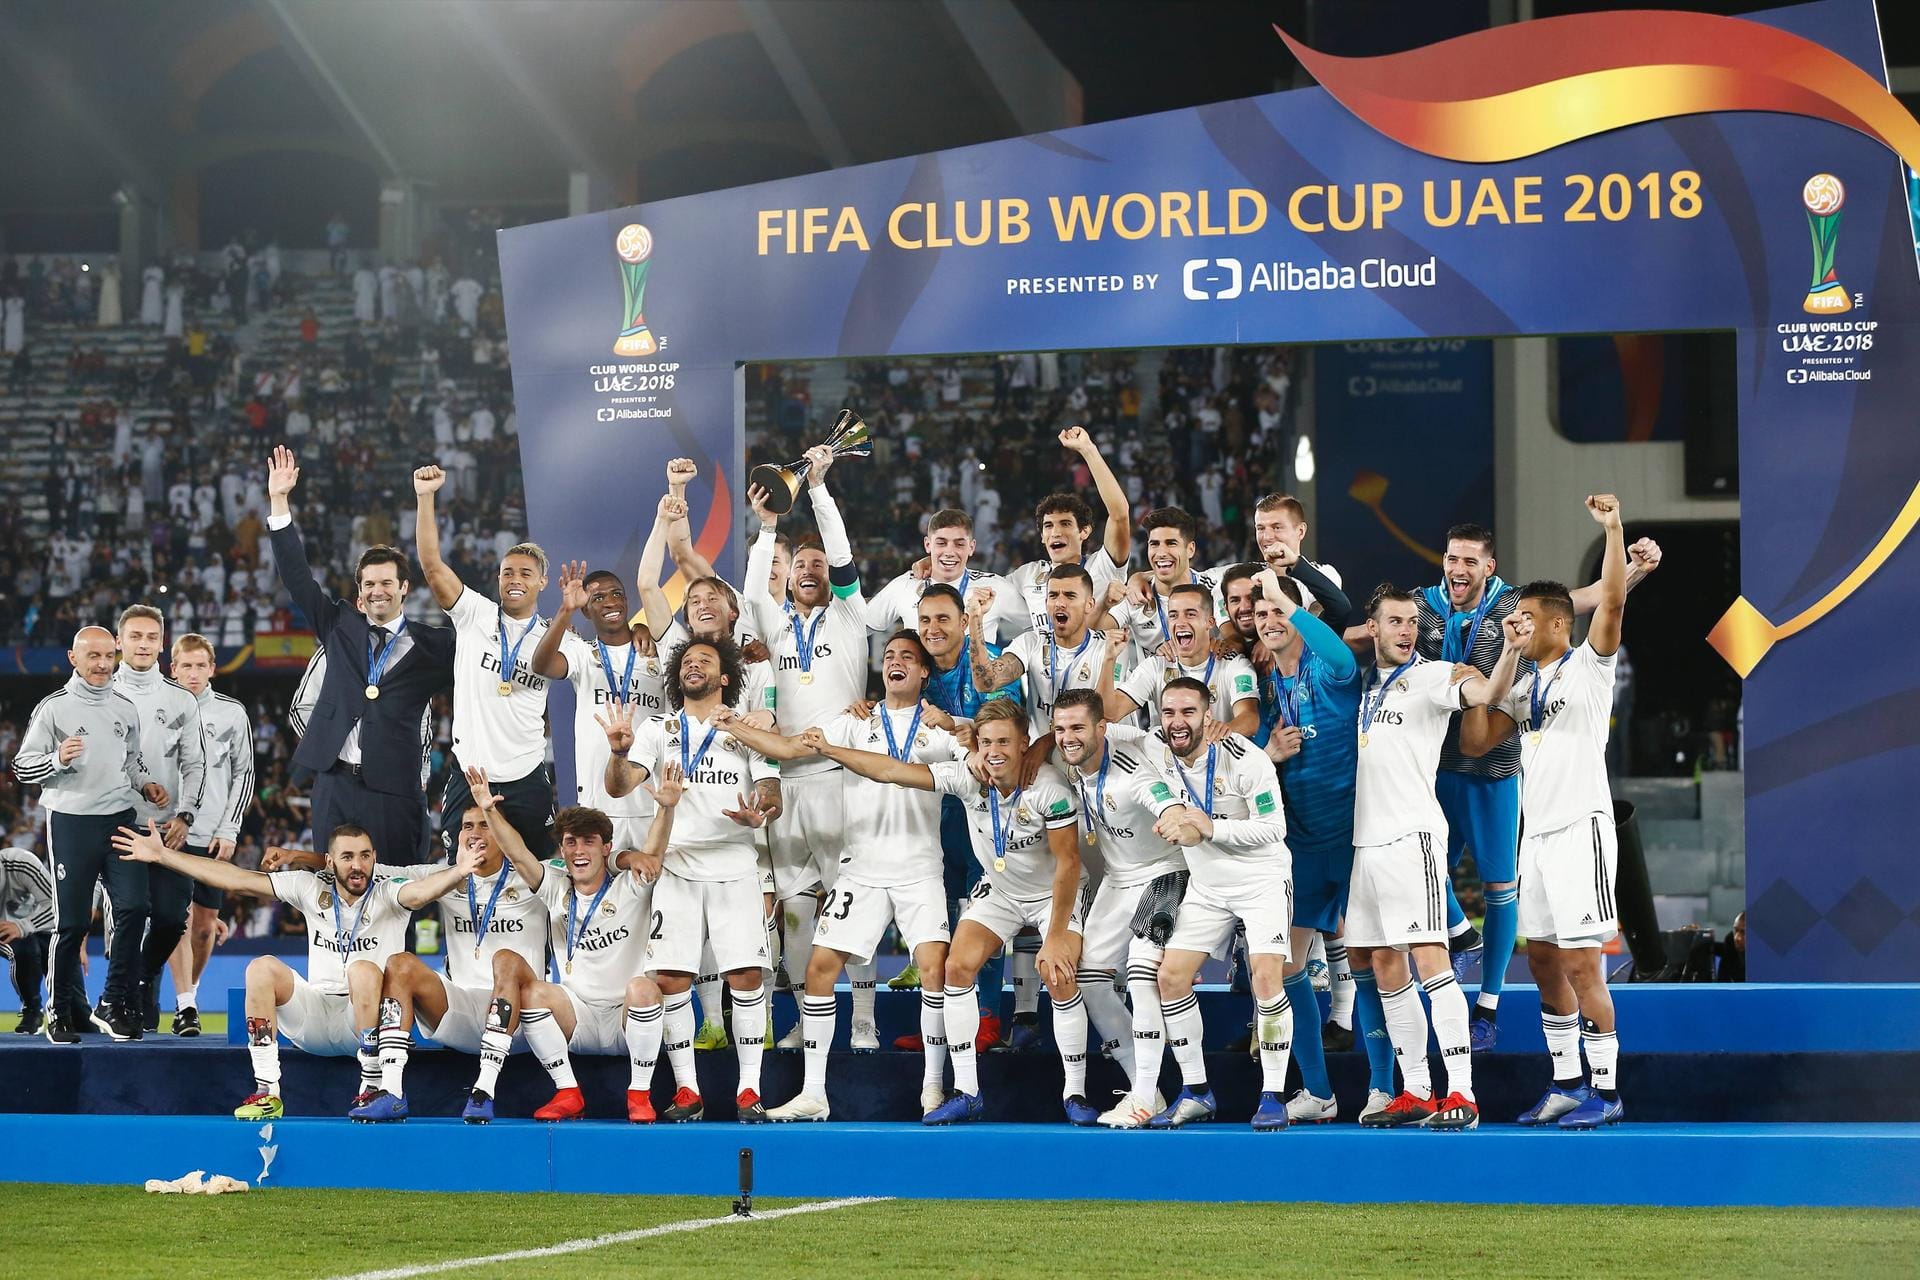 Real Madrid: Mit dem Jahr 2014 startet die Zeit des Meistervereins Real Madrid. Insgesamt vier Mal (2014, 2016, 2017, 2018) konnten die Spanier den Titel zur Klub-Weltmeisterschaft gewinnen und die anderen kontinentalübergreifenden Vereine ohne Trophäe nach Hause schicken. Mit vier Siegen setzen sie sich gegen internationale Konkurrenz durch und sind Ranglistenerster.